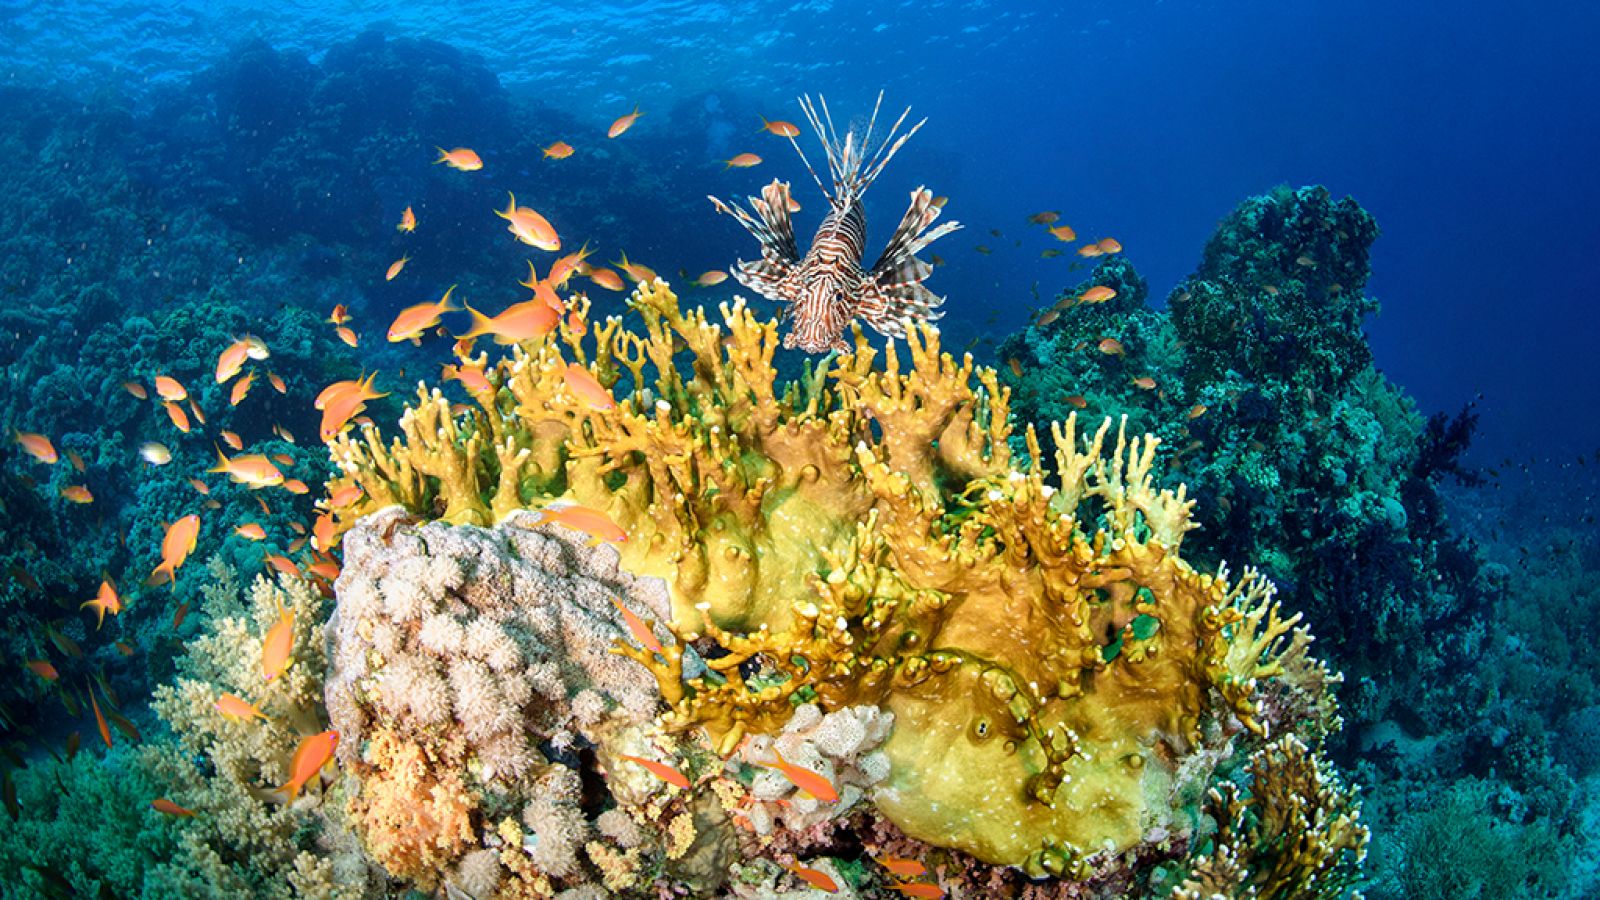 Grandes documentales - El mar arábigo: Los carnívoros del arrecife de coral